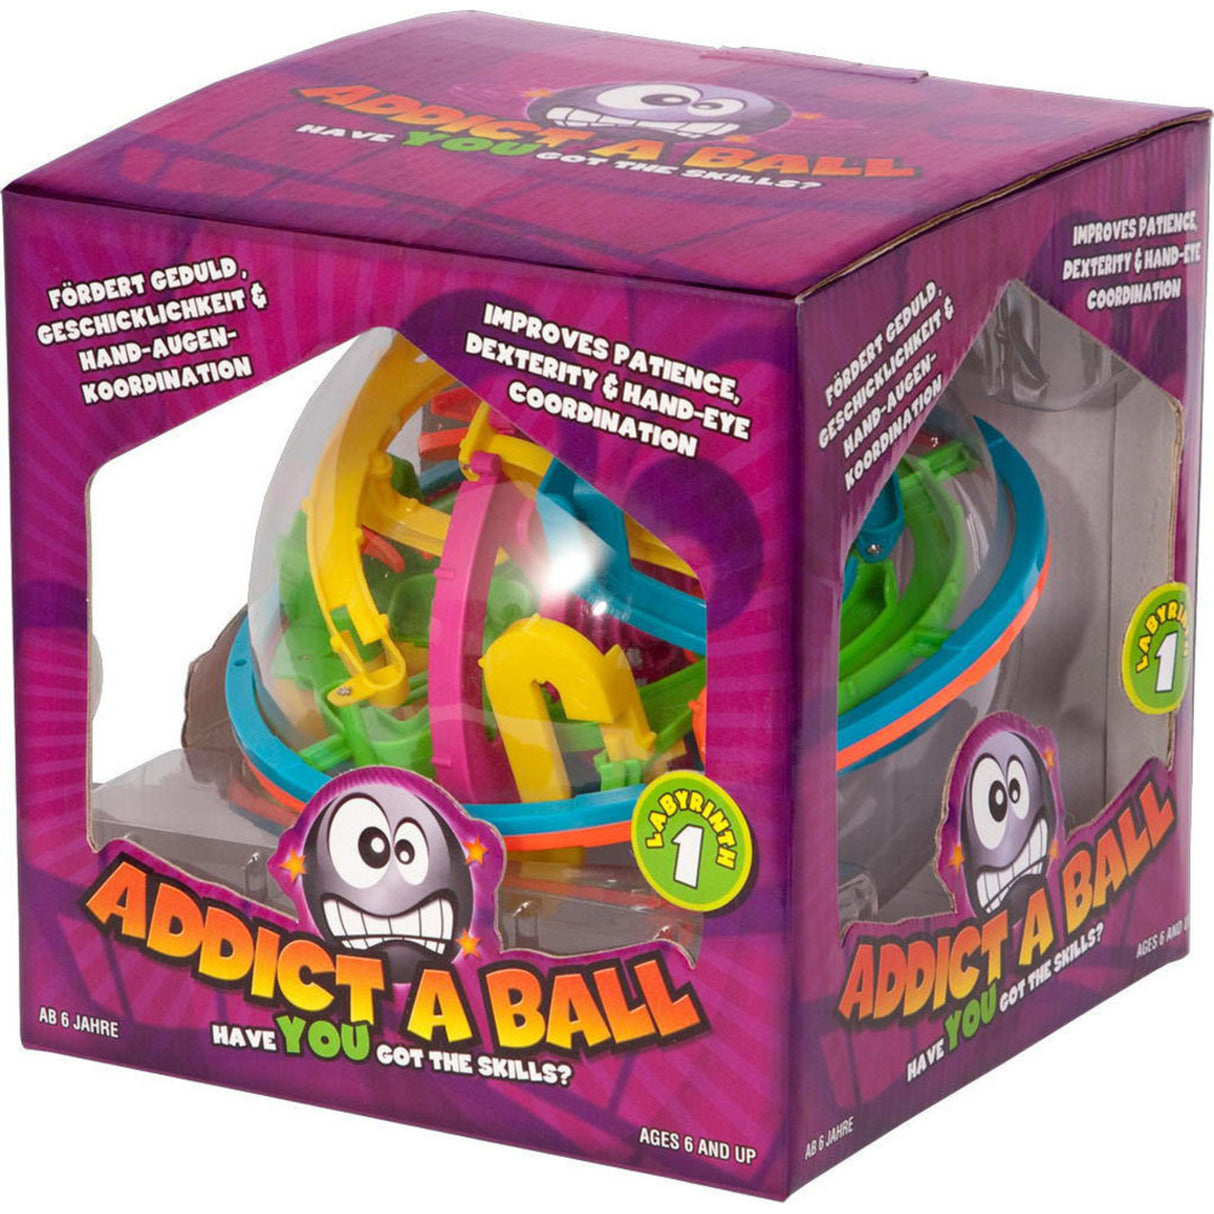 Addict A Ball Labyrinth Spielzeug mit 20cm Durchmesser